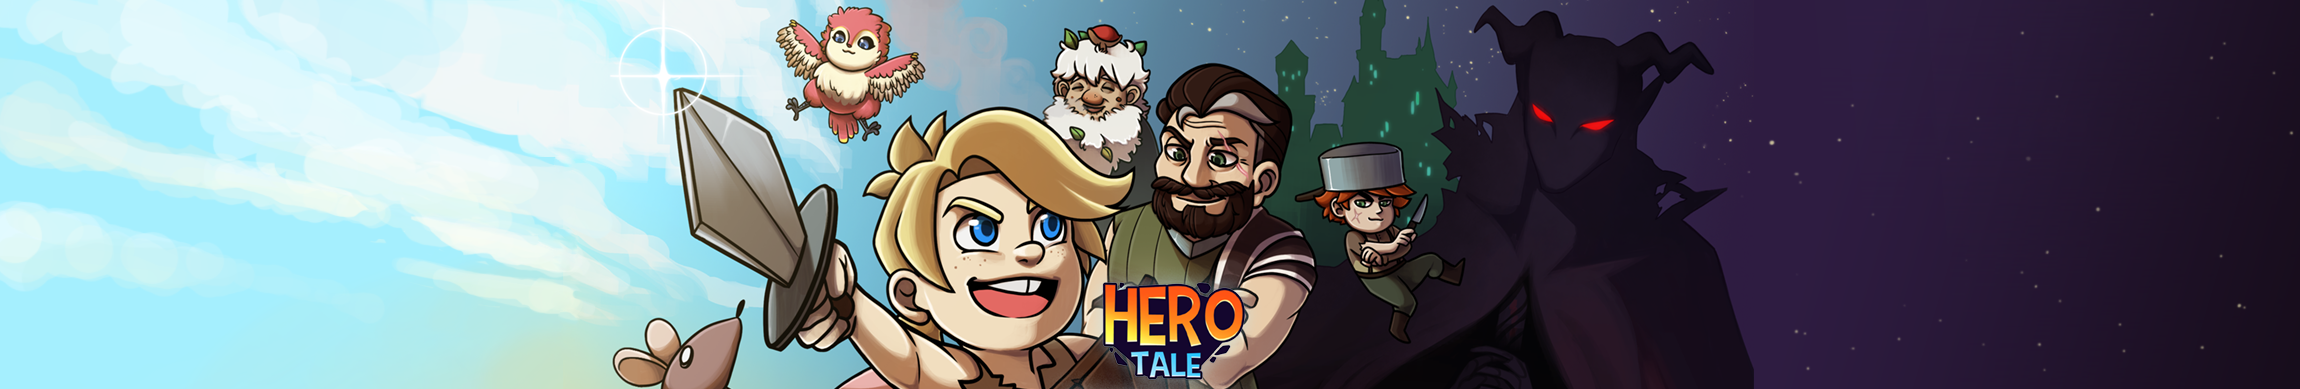 Hero Tale - Idle RPG